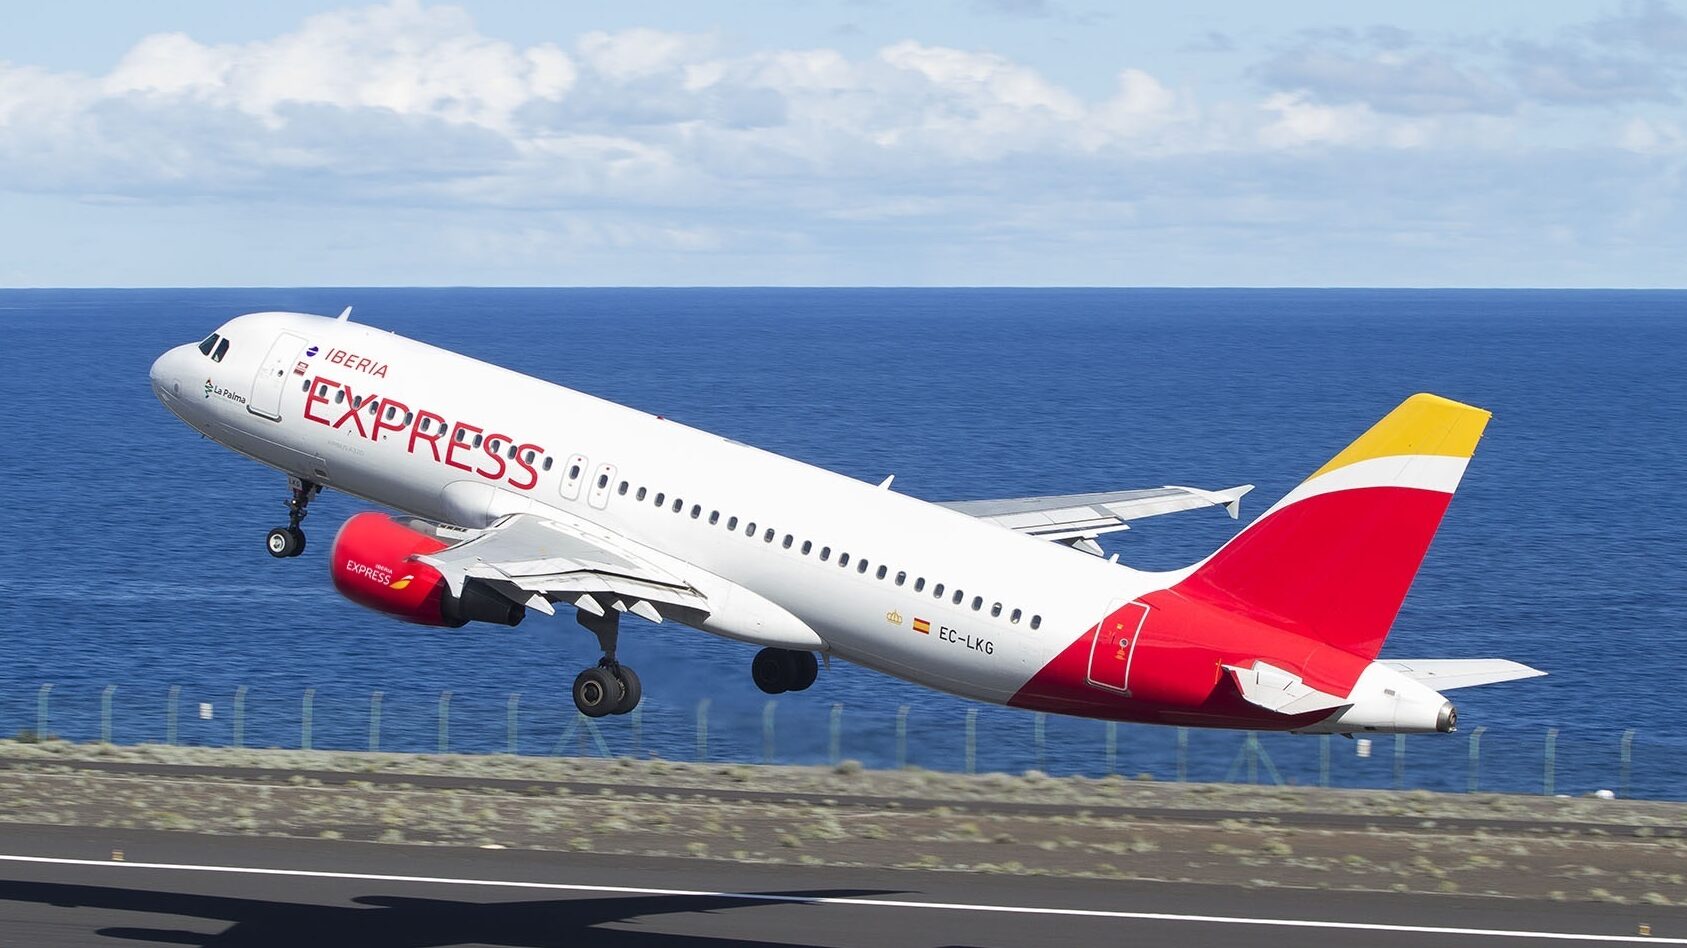 IAG: Iberia Express cancela 92 los vuelos ante la huelga de tripulantes que comienza este domingo